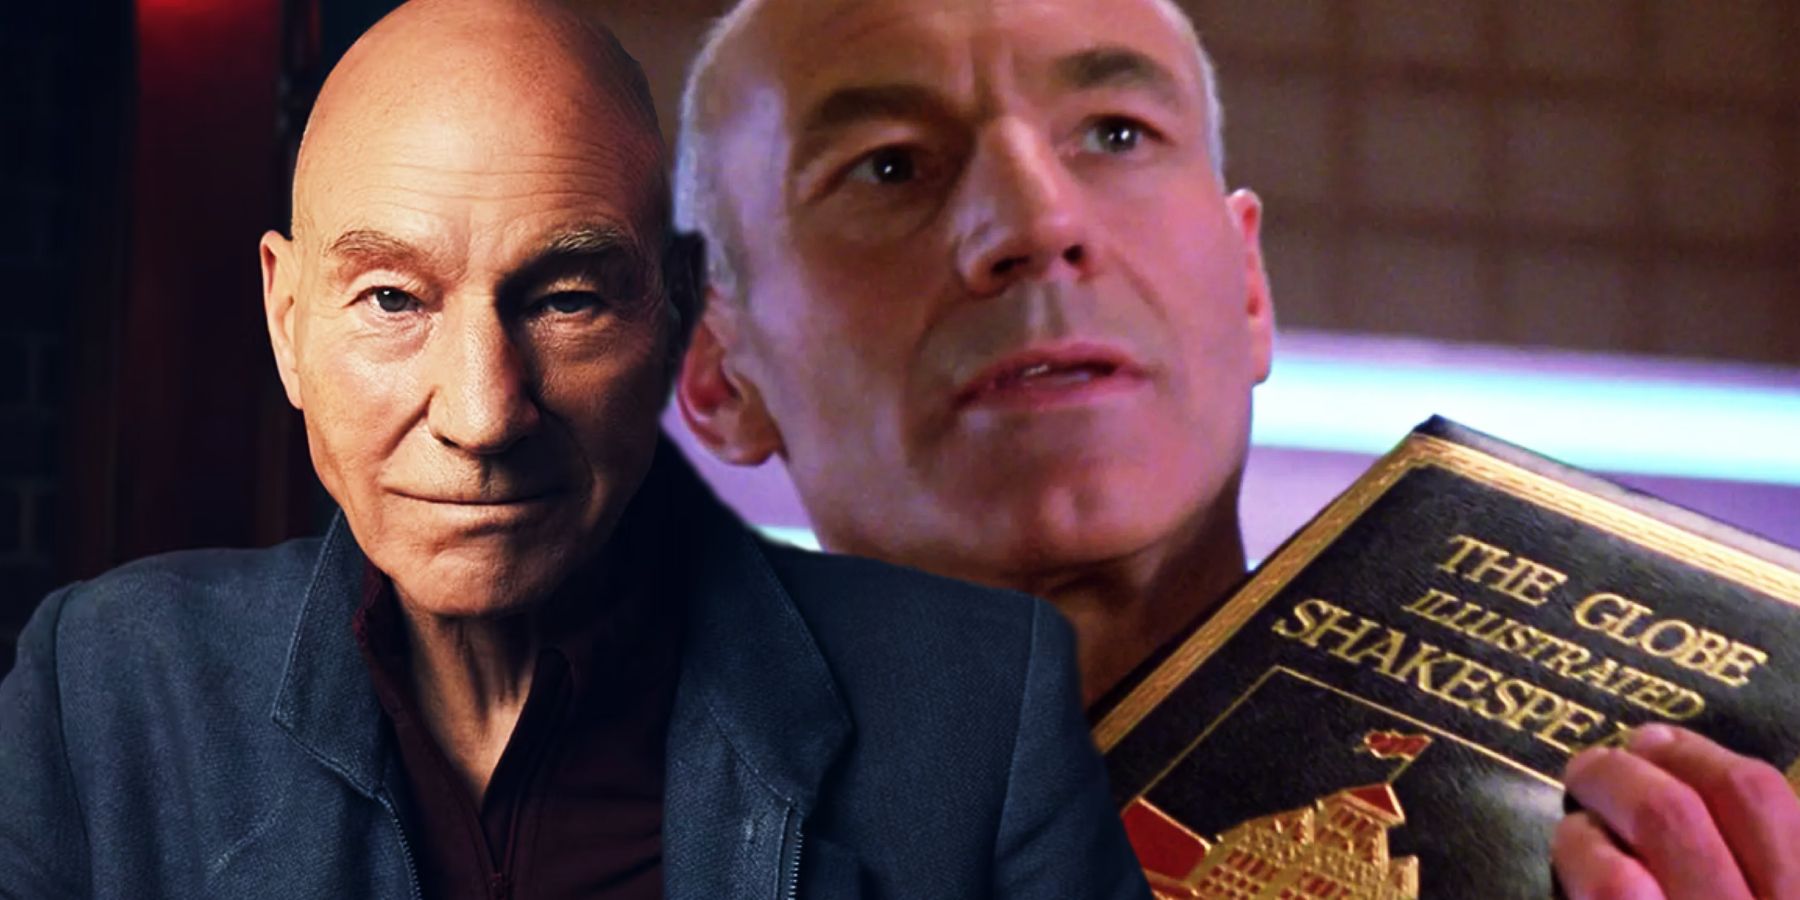 Qué significa el discurso final de Picard “There Is A Tide…” en 10 adelante